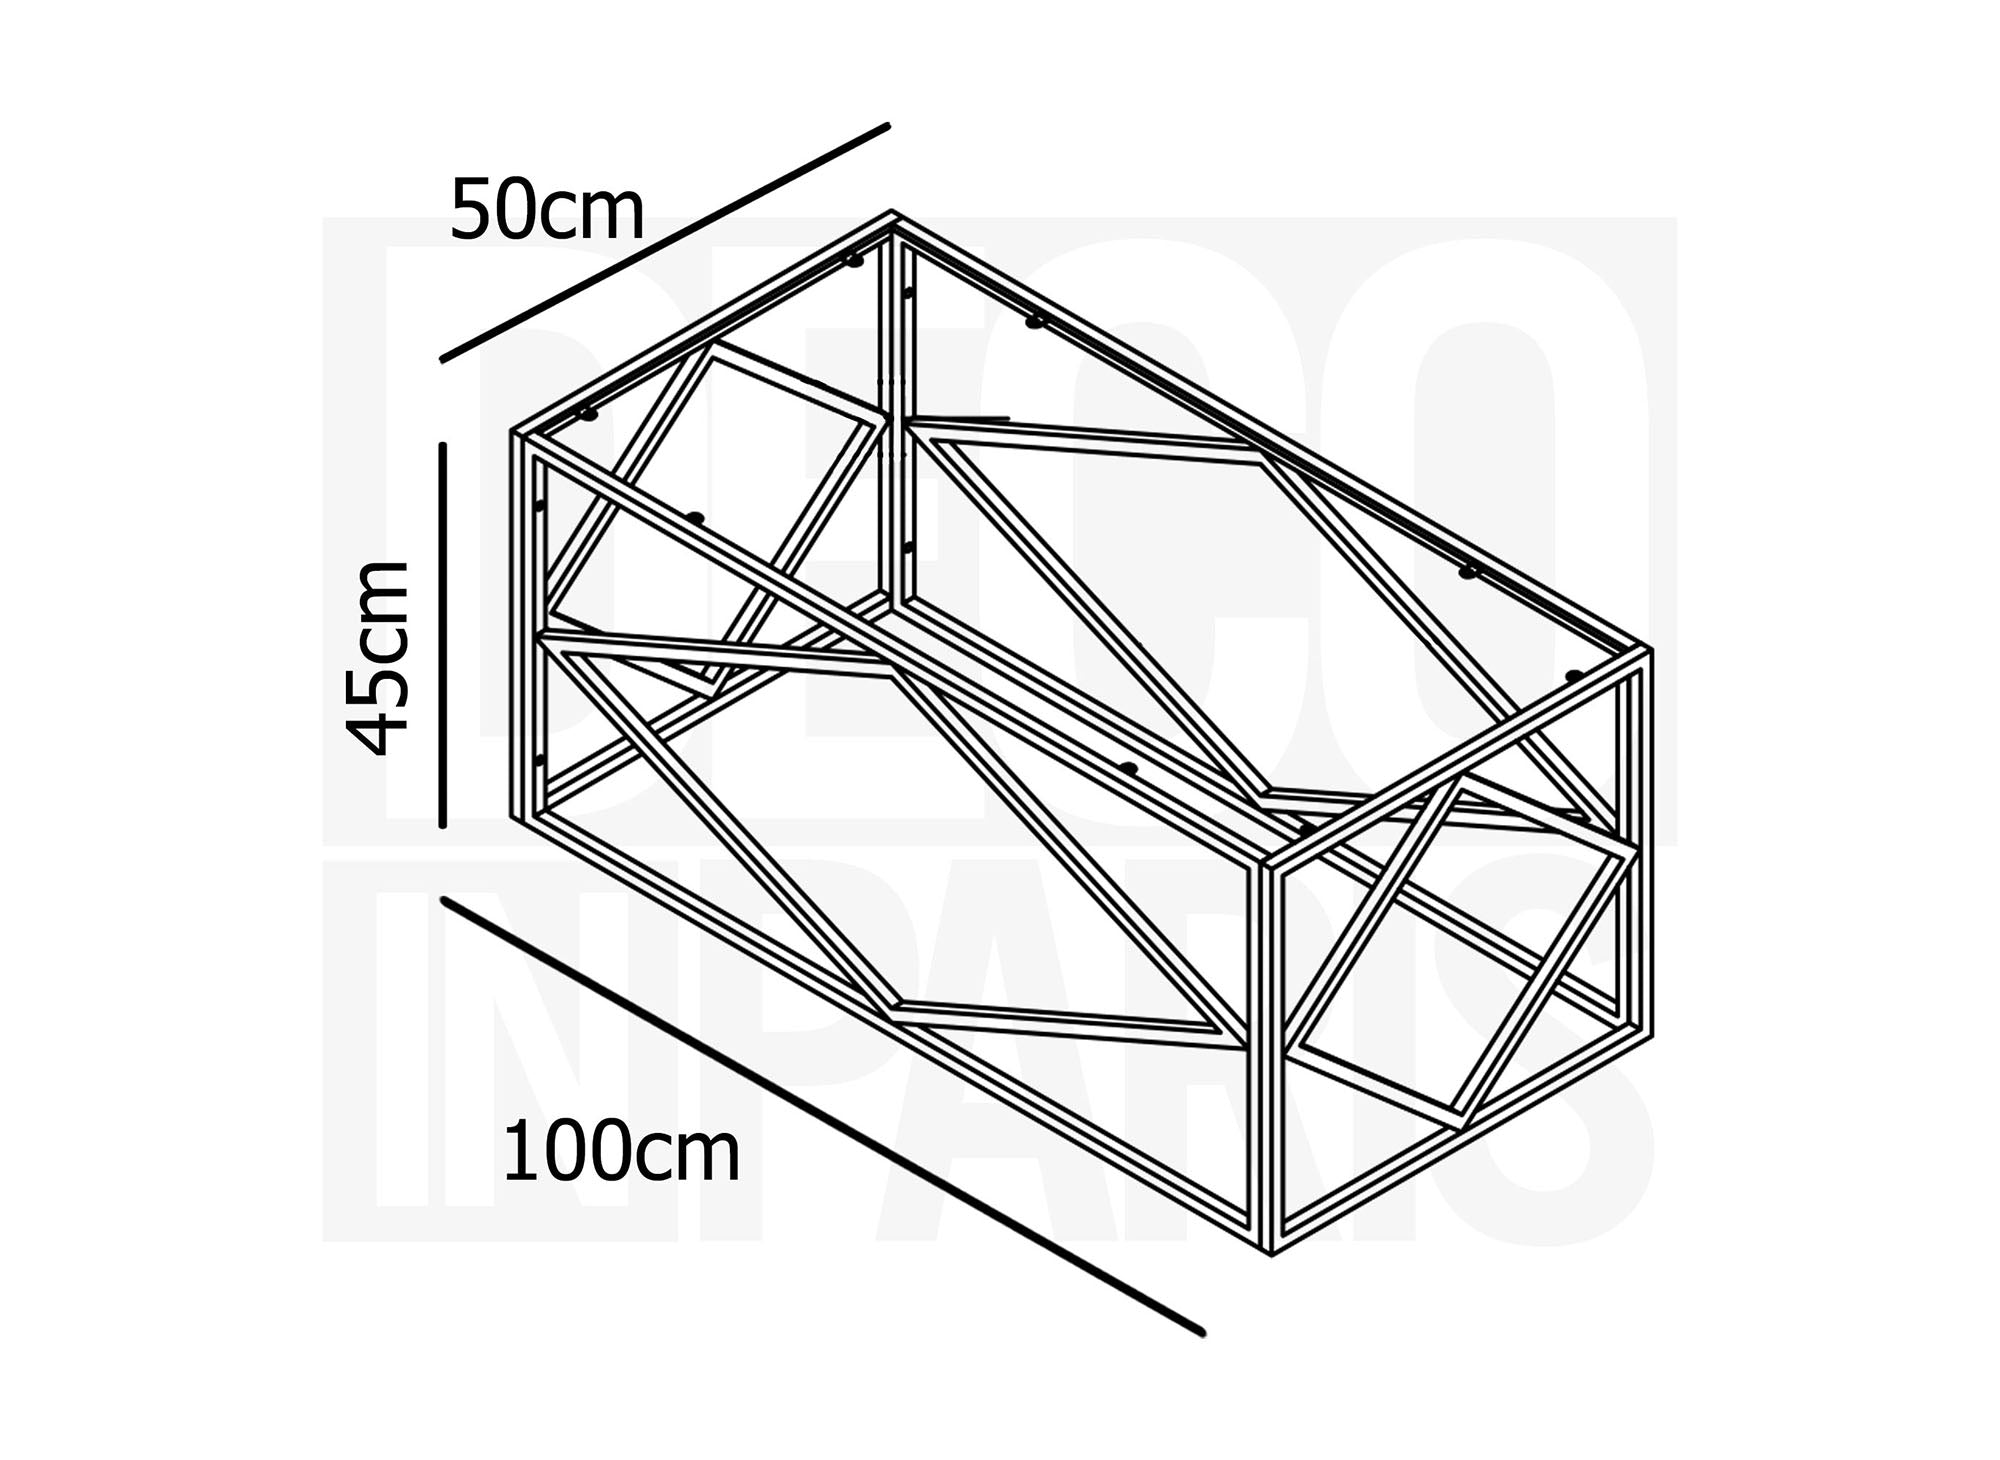 Table basse design en verre et métal rectangulaire ELIO